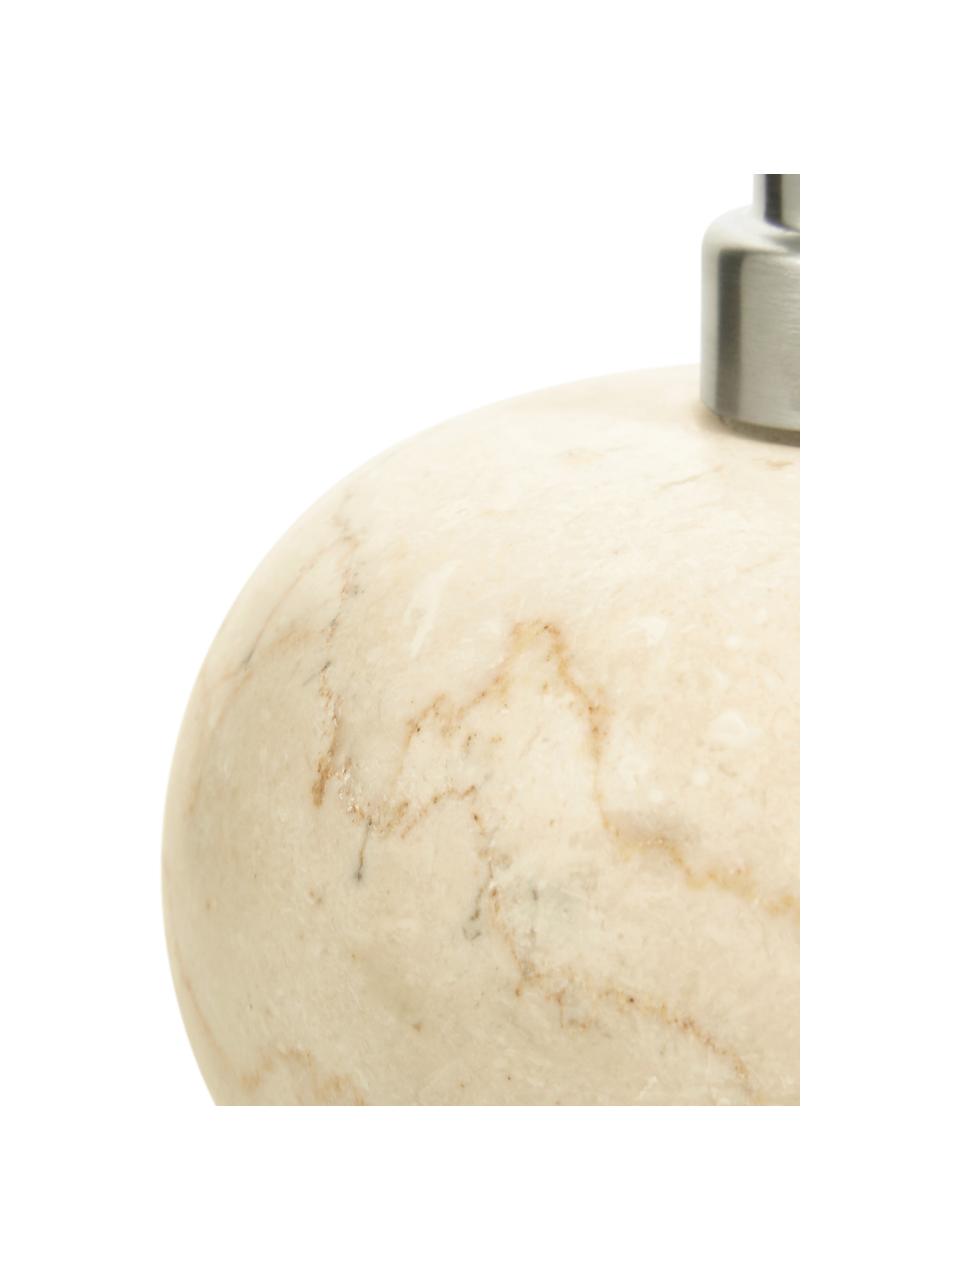 Dosatore di sapone in marmo Luxor, Testa della pompa: acciaio inossidabile, Beige marmo, argento, Ø 12 x A 13 cm